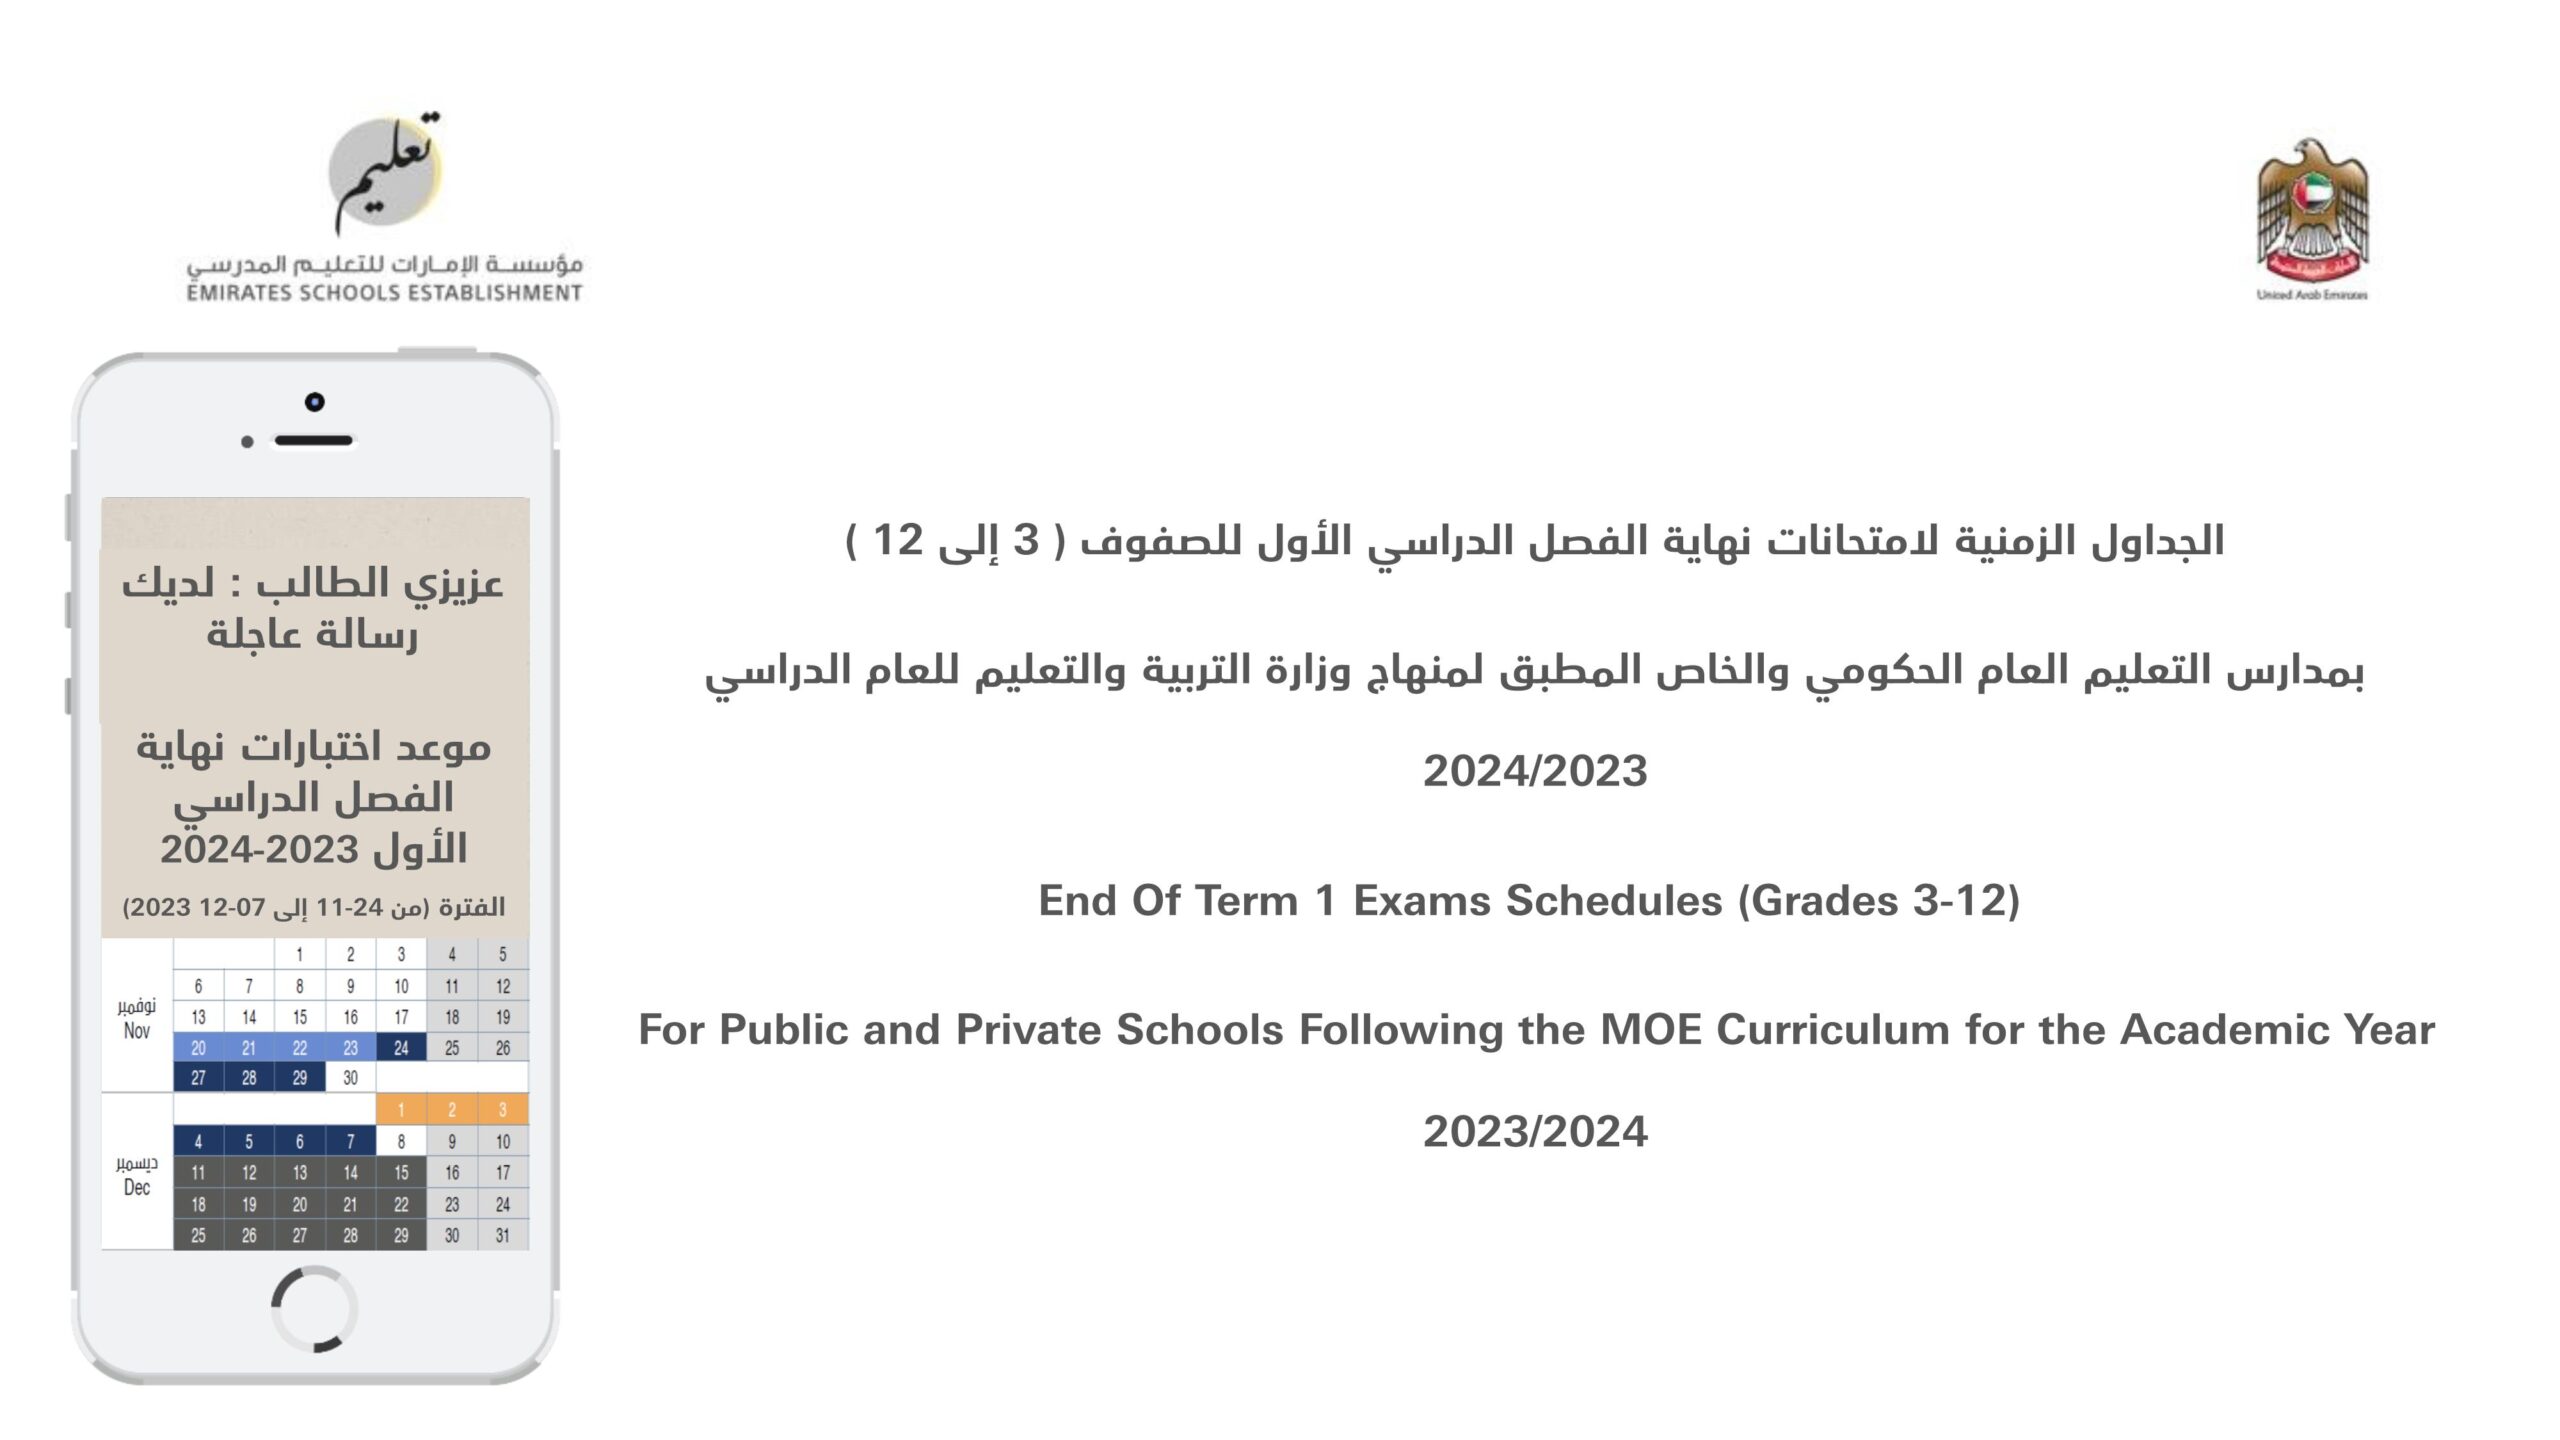 الجداول الزمنية لامتحانات نهاية الفصل الدراسي الأول 2023-2024 للصفوف الثالث إلى الثاني عشر